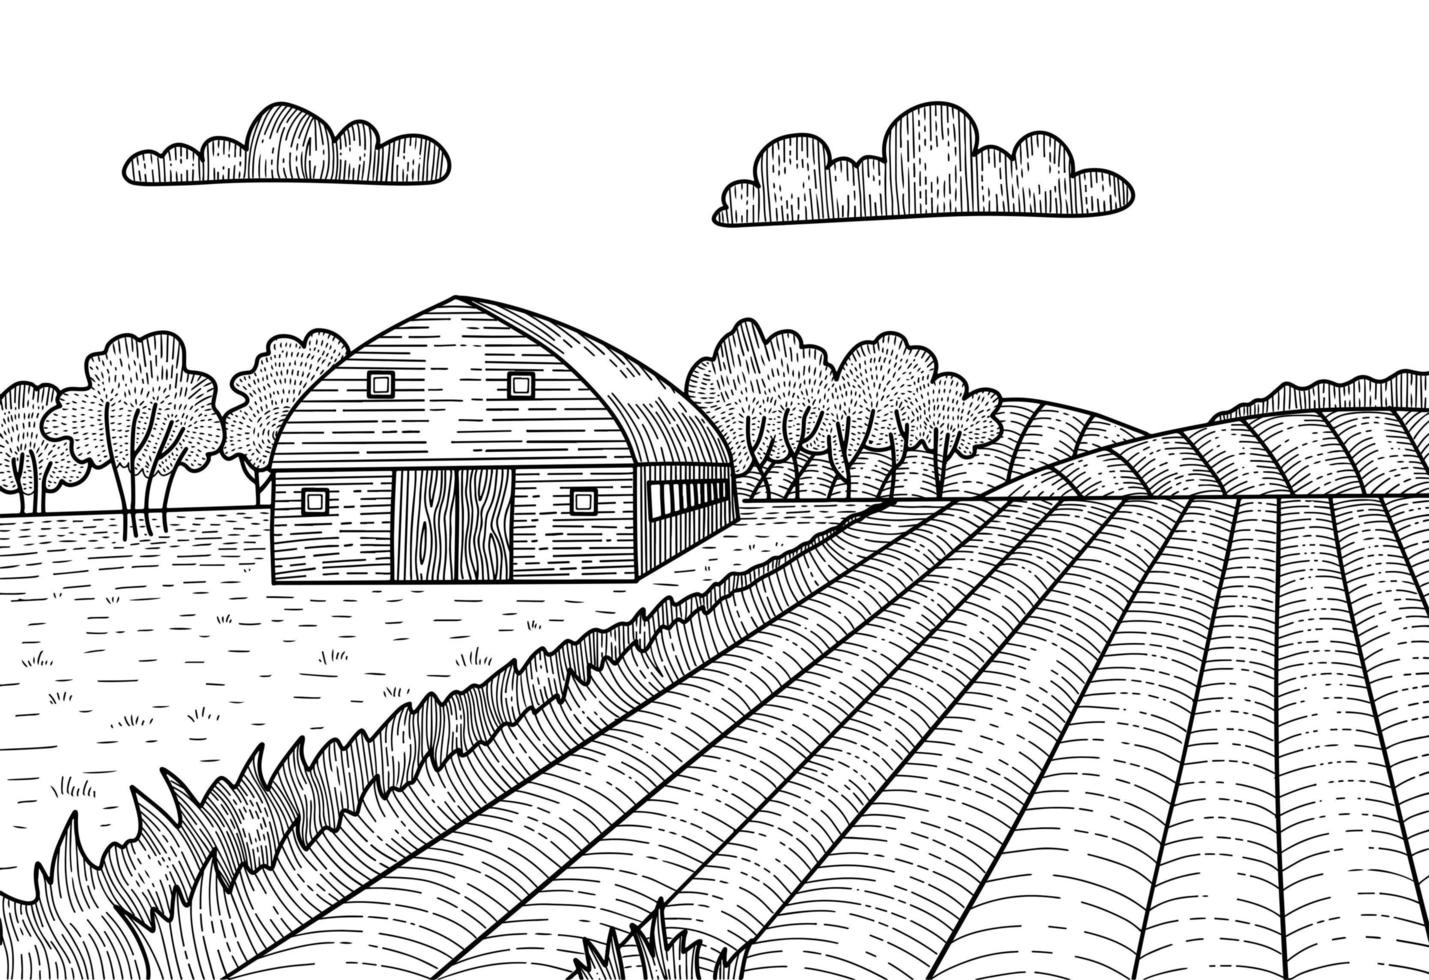 paesaggio rurale in stile grafico incisione. schizzo disegnato a mano convertito in illustrazione vettoriale. campagna con fattoria, fienile. vettore